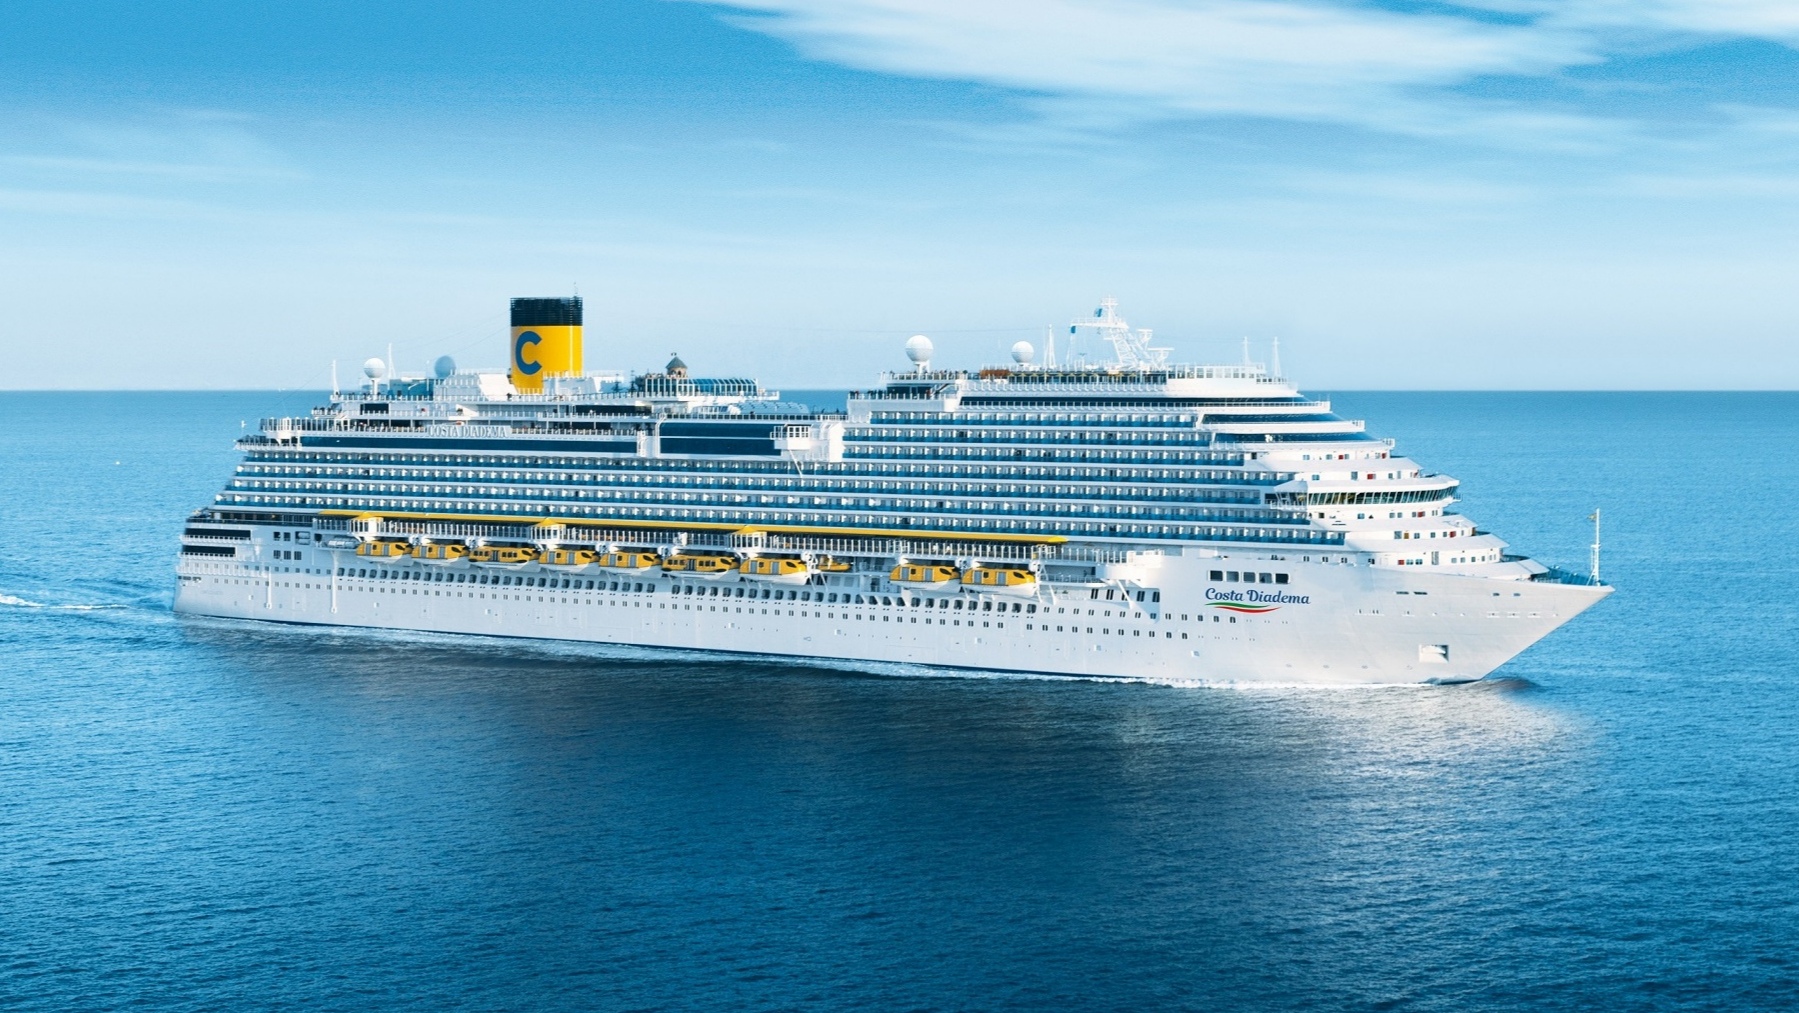 Costa Cruises reshuffles management team CRUISE TO TRAVEL